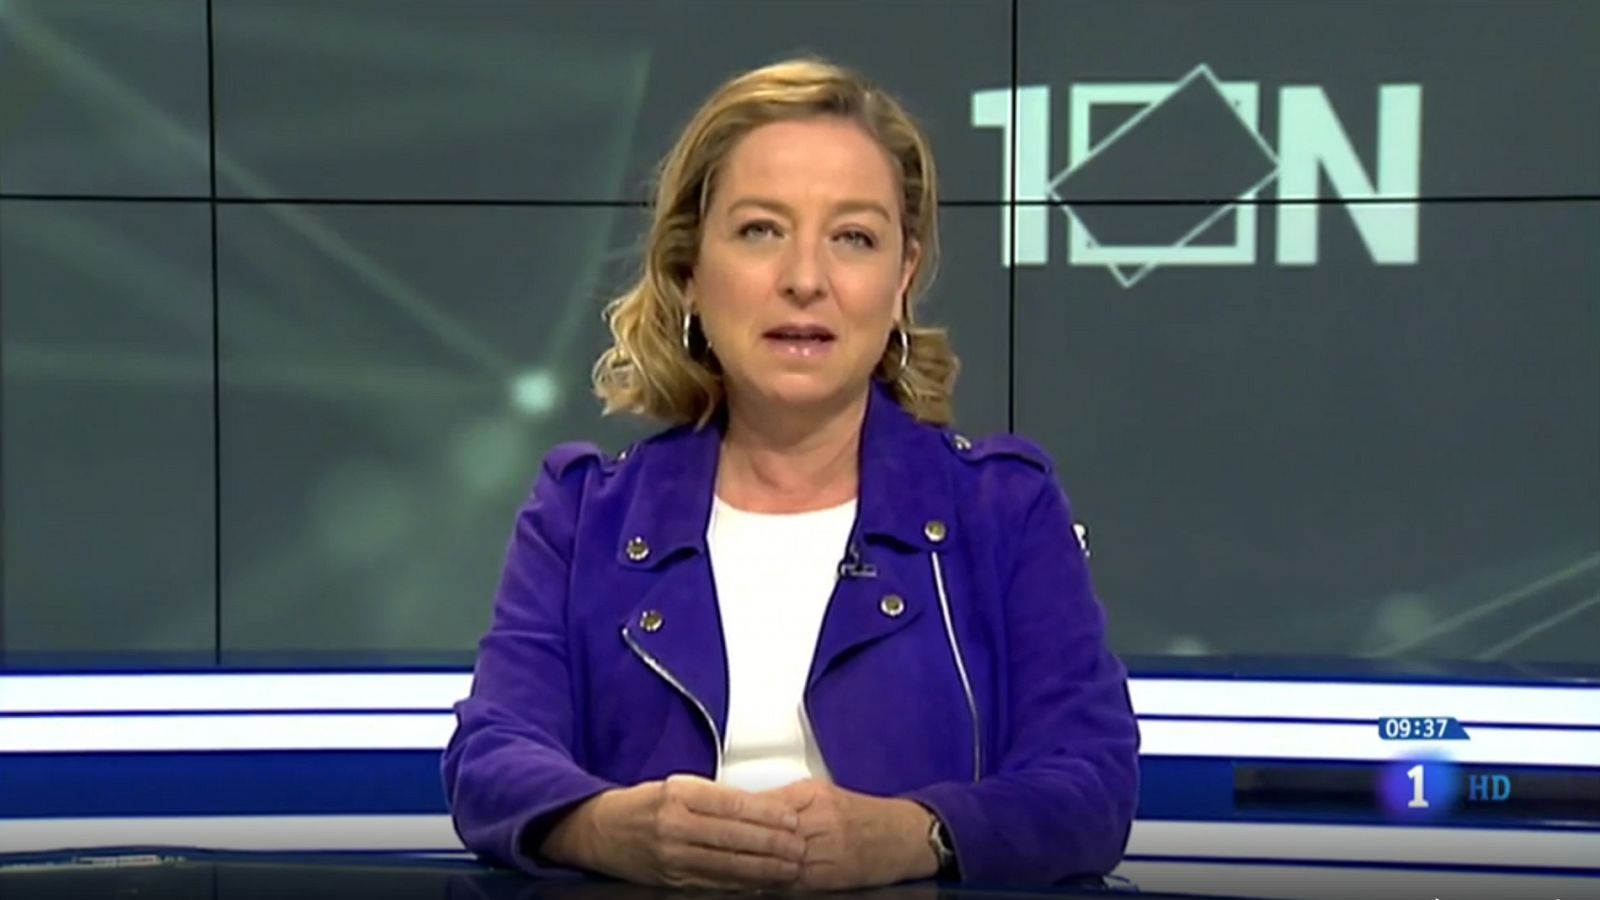 Elecciones generales 2019: Oramas (CC): "No podemos ir a nuevas elecciones en enero, espero que haya altura de miras" - RTVE.es